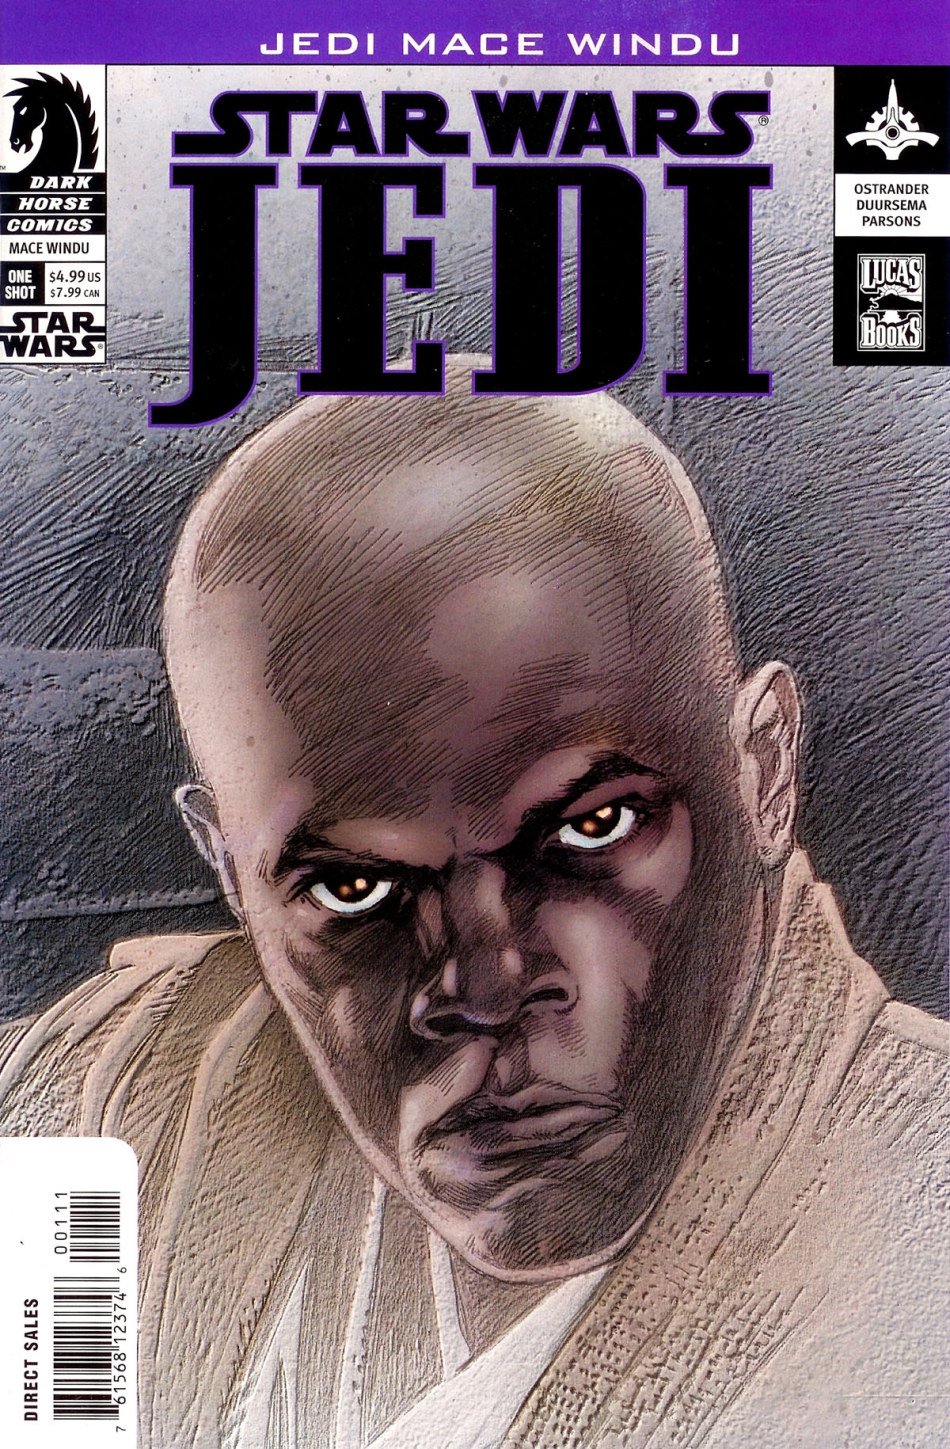 Jedi: Mace Windu (26.02.2003)